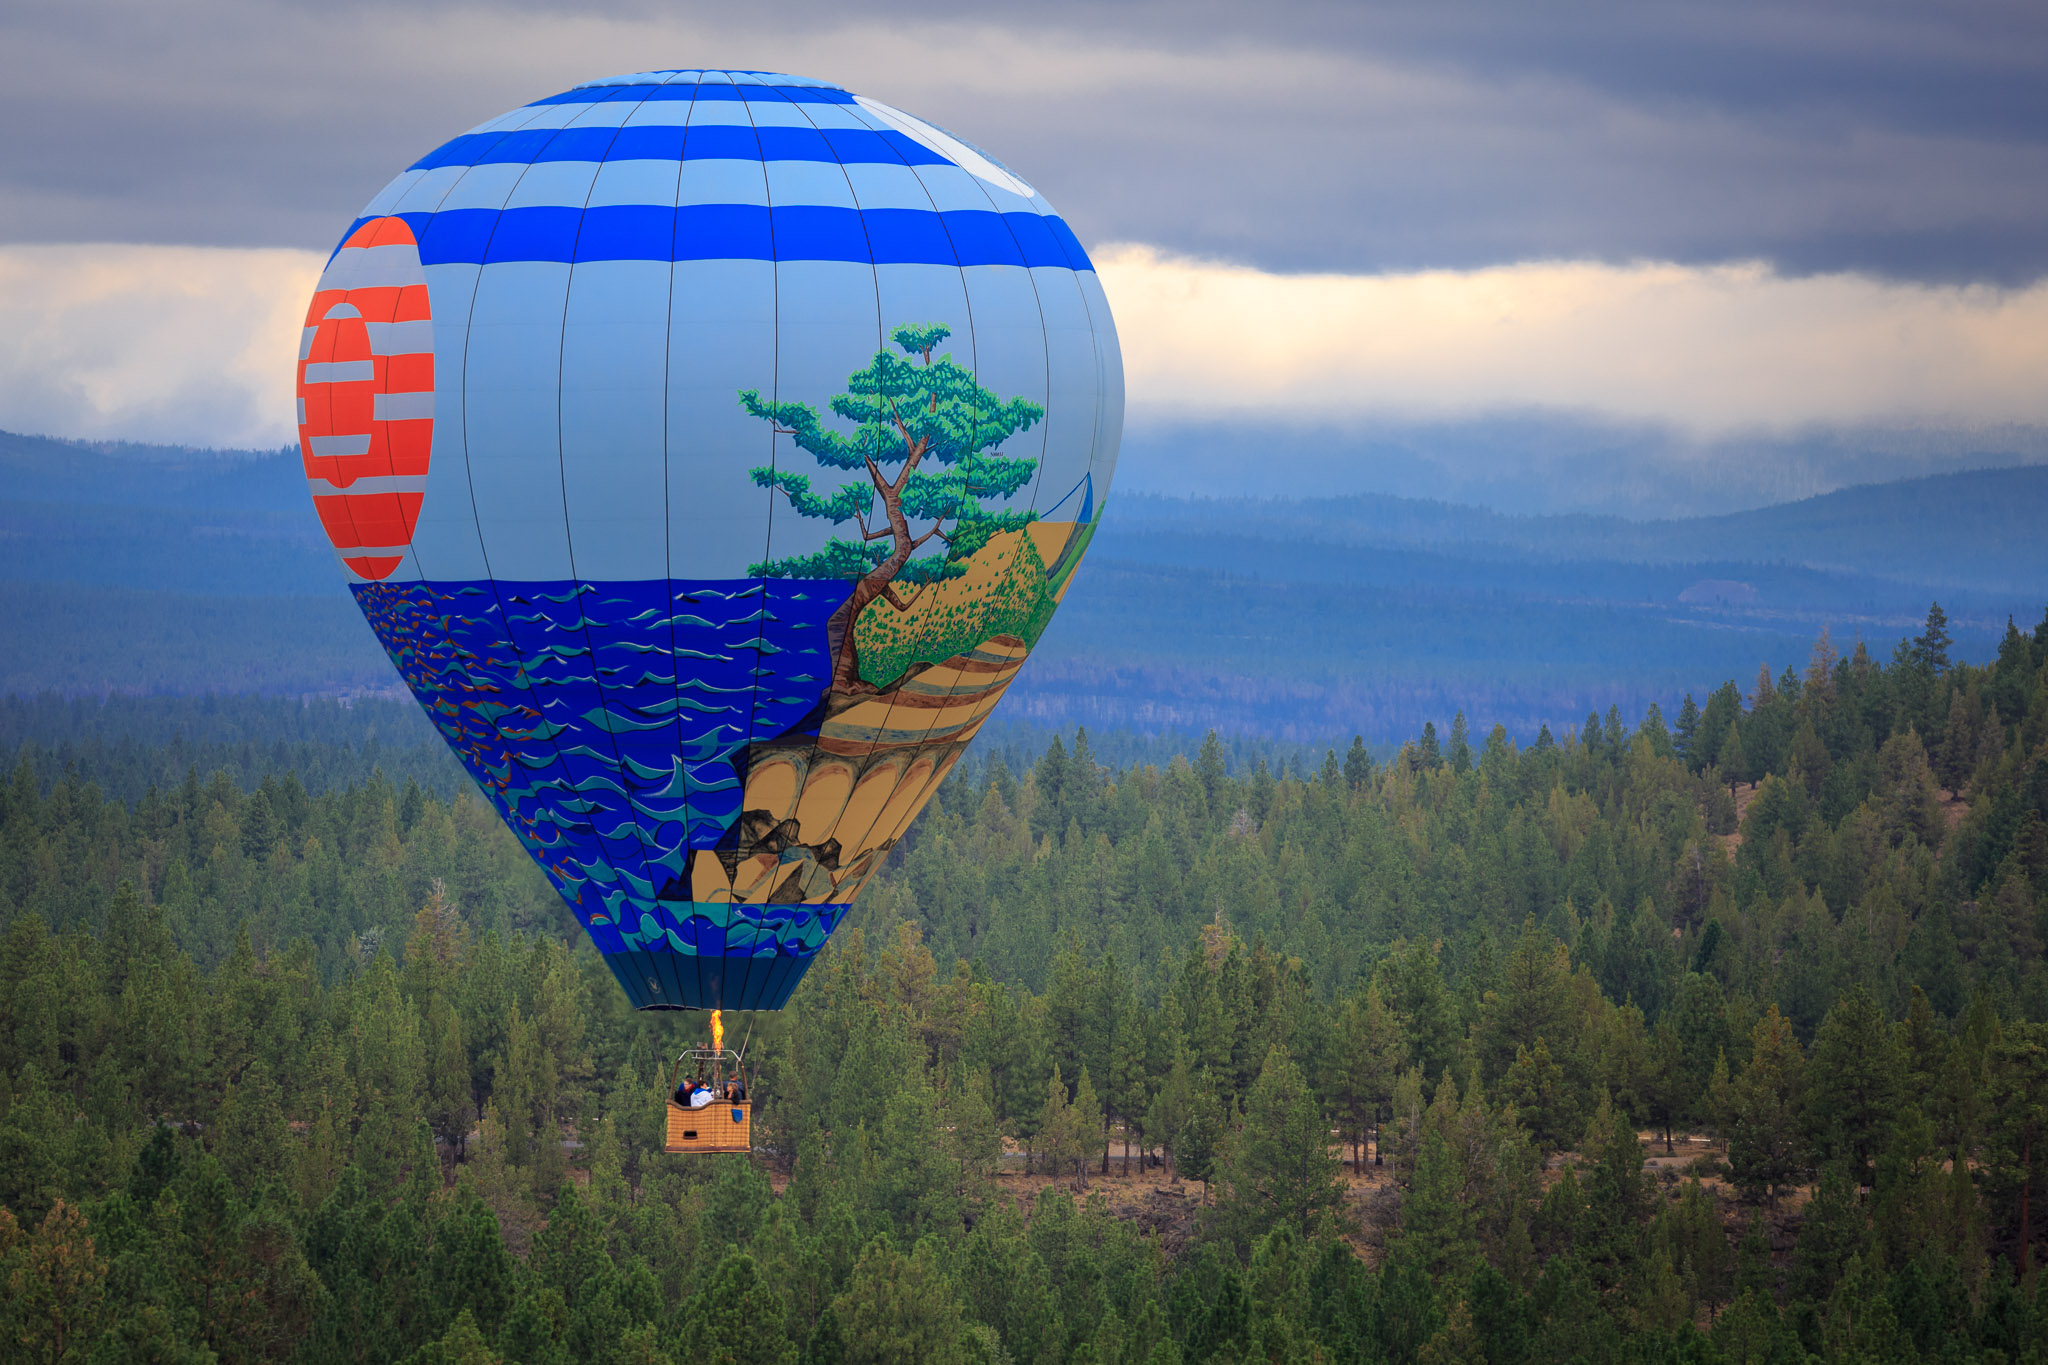 Hot Air Balloon over Awbrey Glen, Bend, Oregon